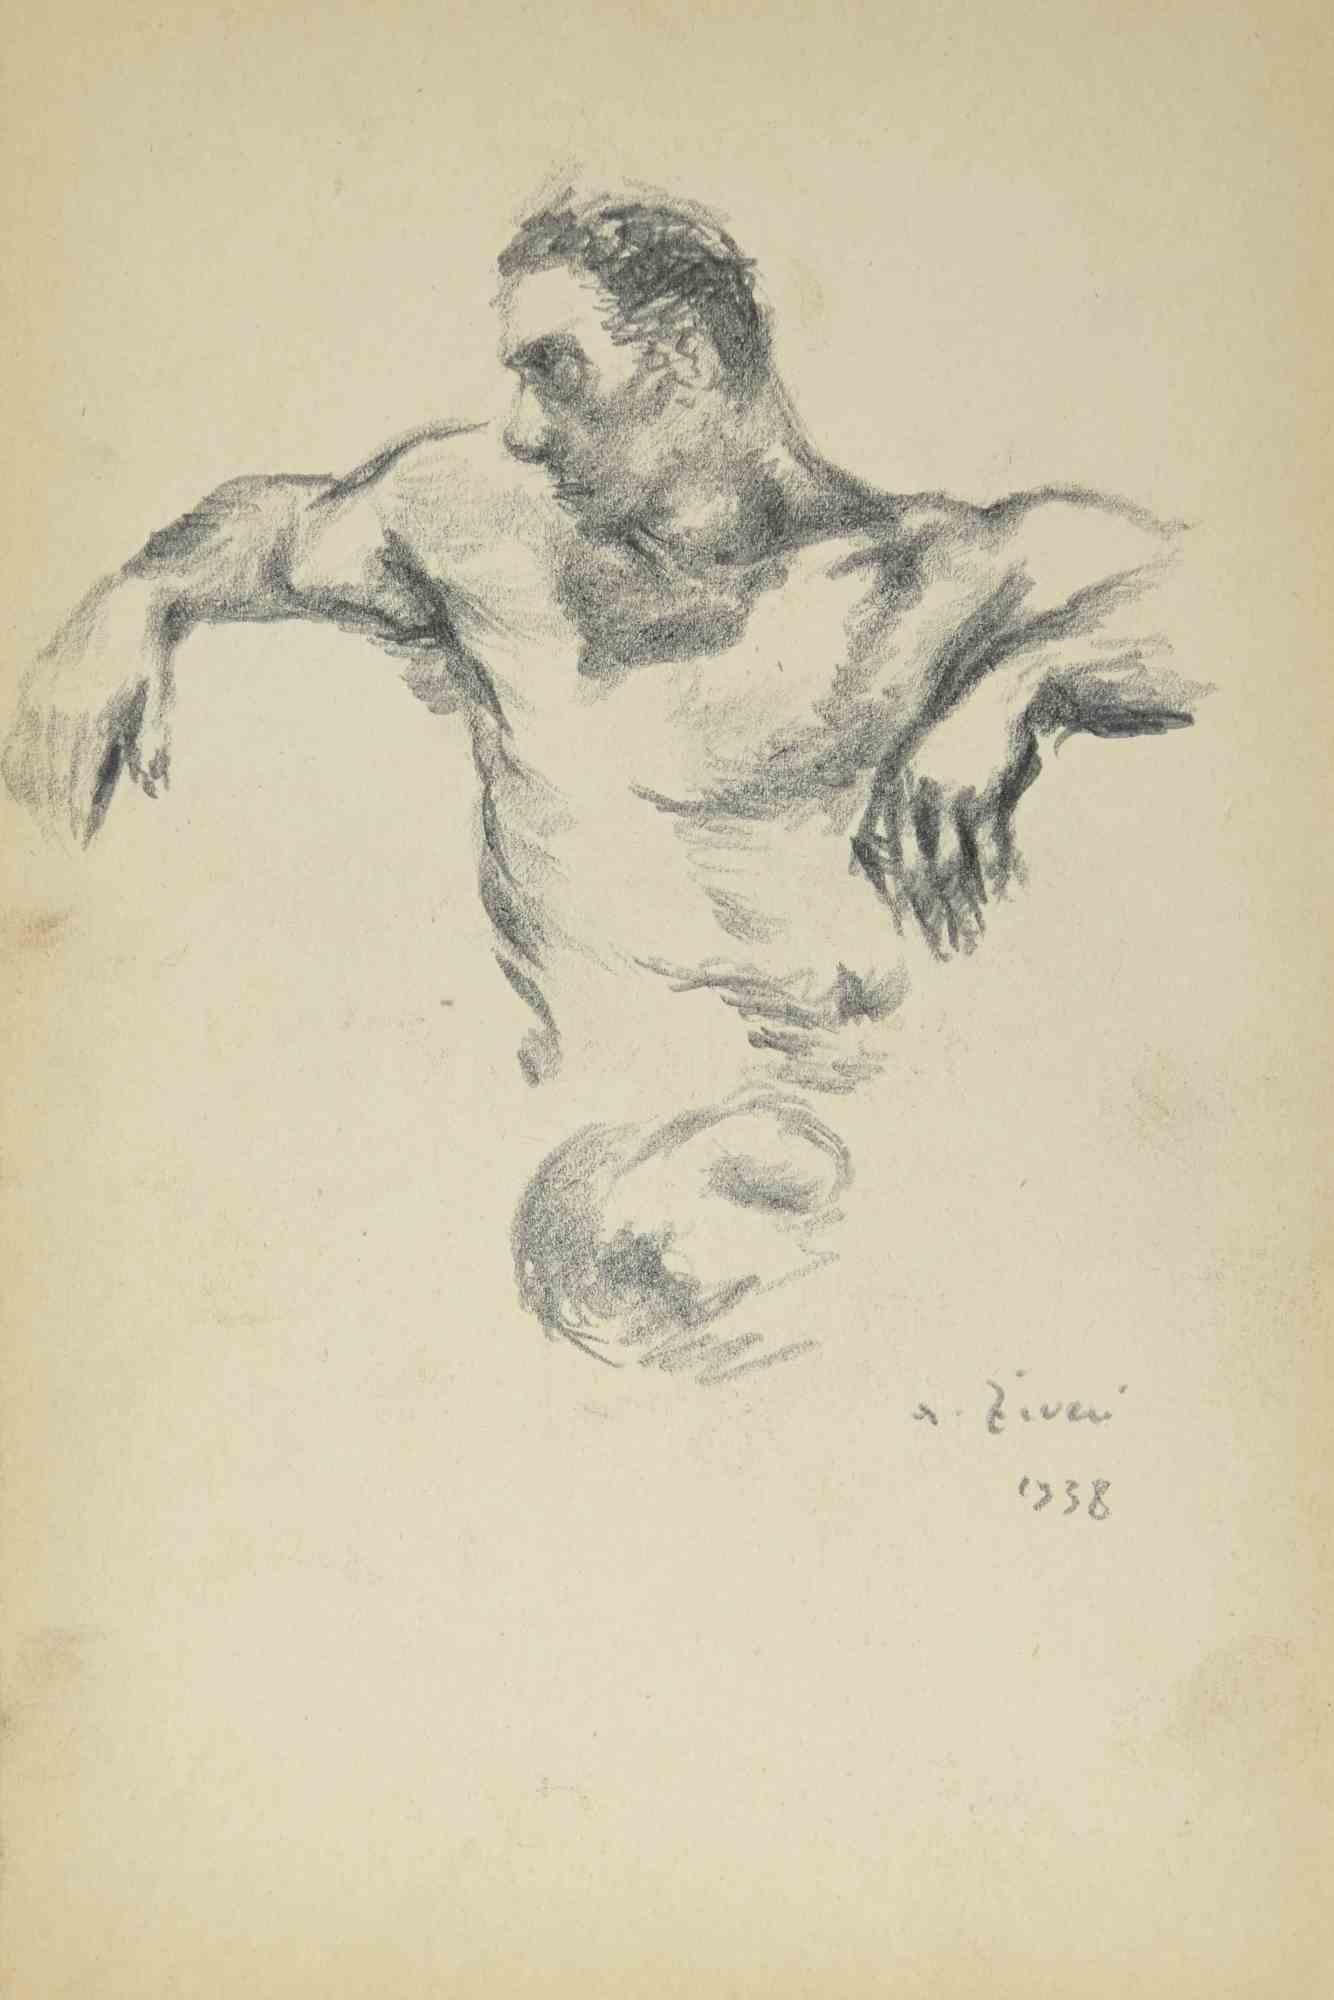 Männlicher Akt – Zeichnung von Alberto Ziveri – 1938